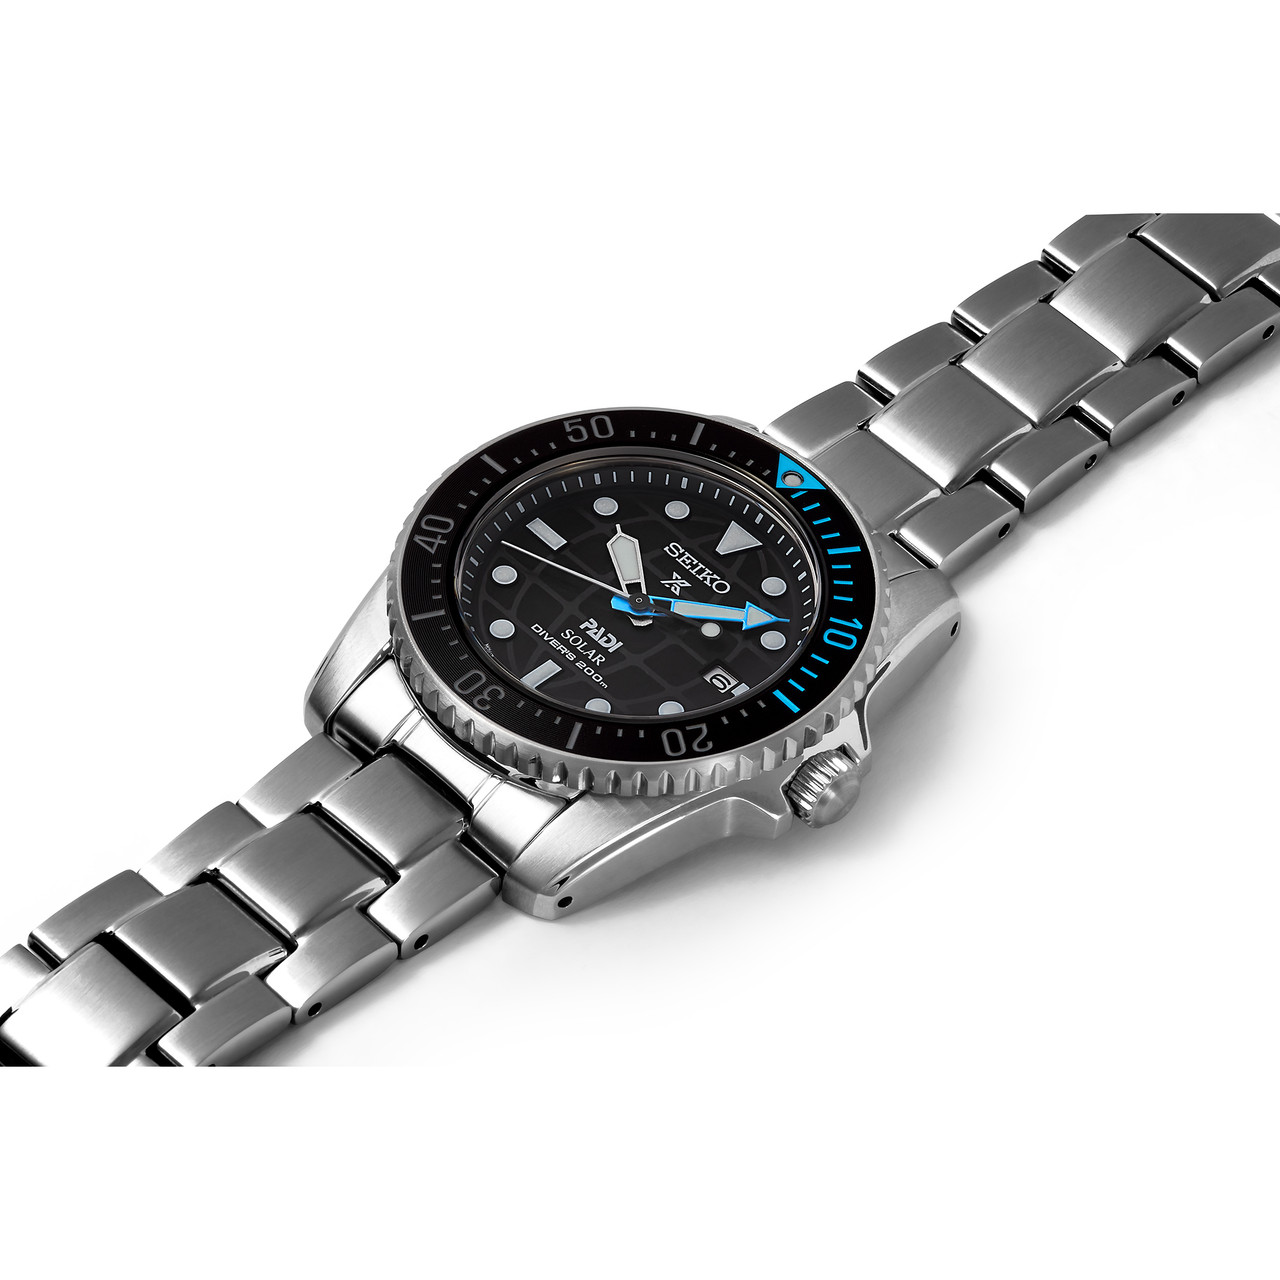 SNE575P1 Seiko Prospex PADI Compact Solar Scuba Diver's Watch